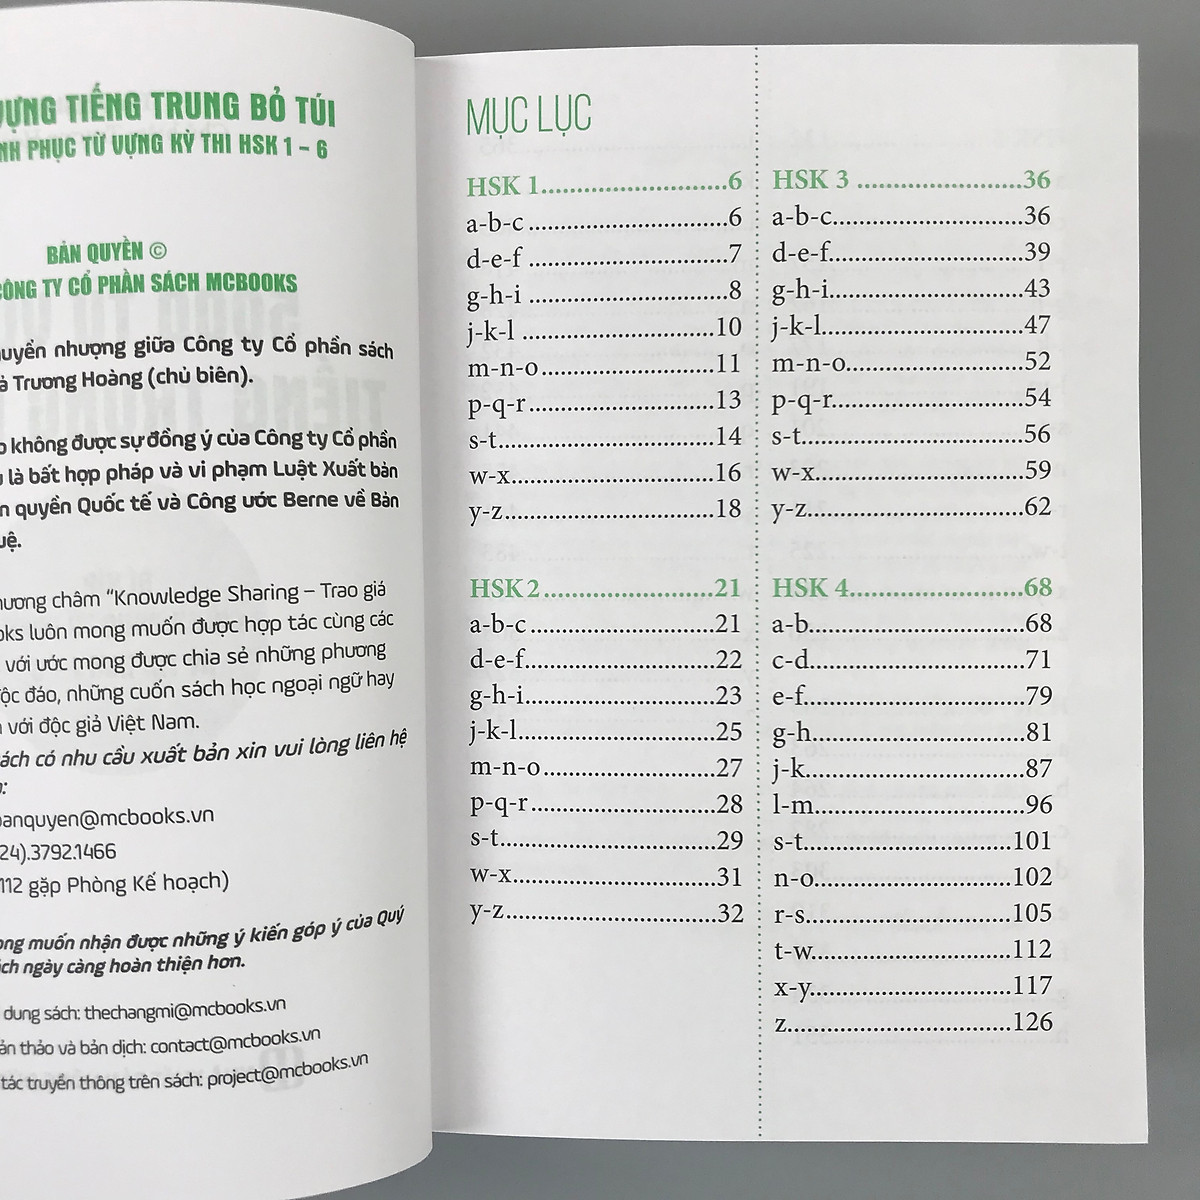 5000 Từ Vựng Tiếng Trung Bỏ Túi - Bí Kíp Chinh Phục Từ Vựng Kỳ Thi Hsk 1 - 6 PDF